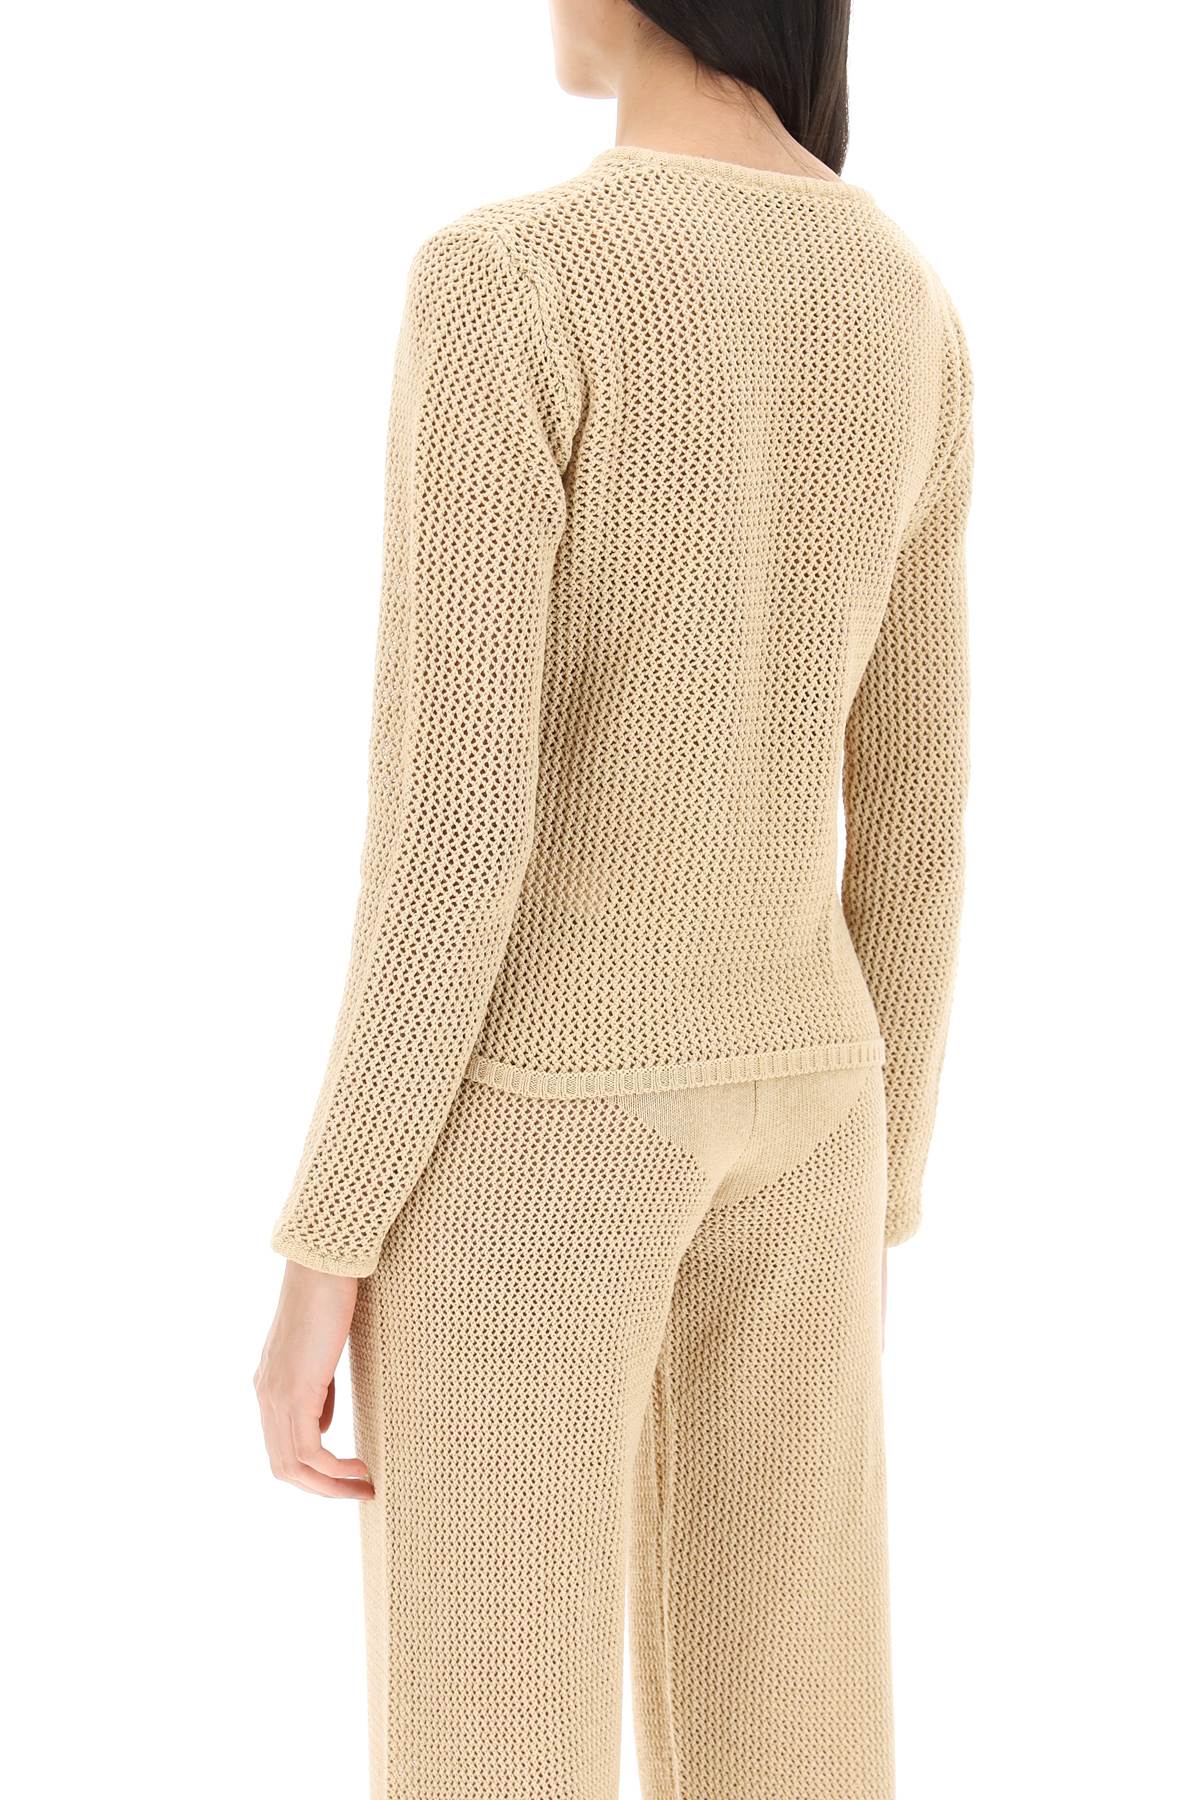 Shop Mvp Wardrobe Cambria Openwork Sweater In Nude (beige)